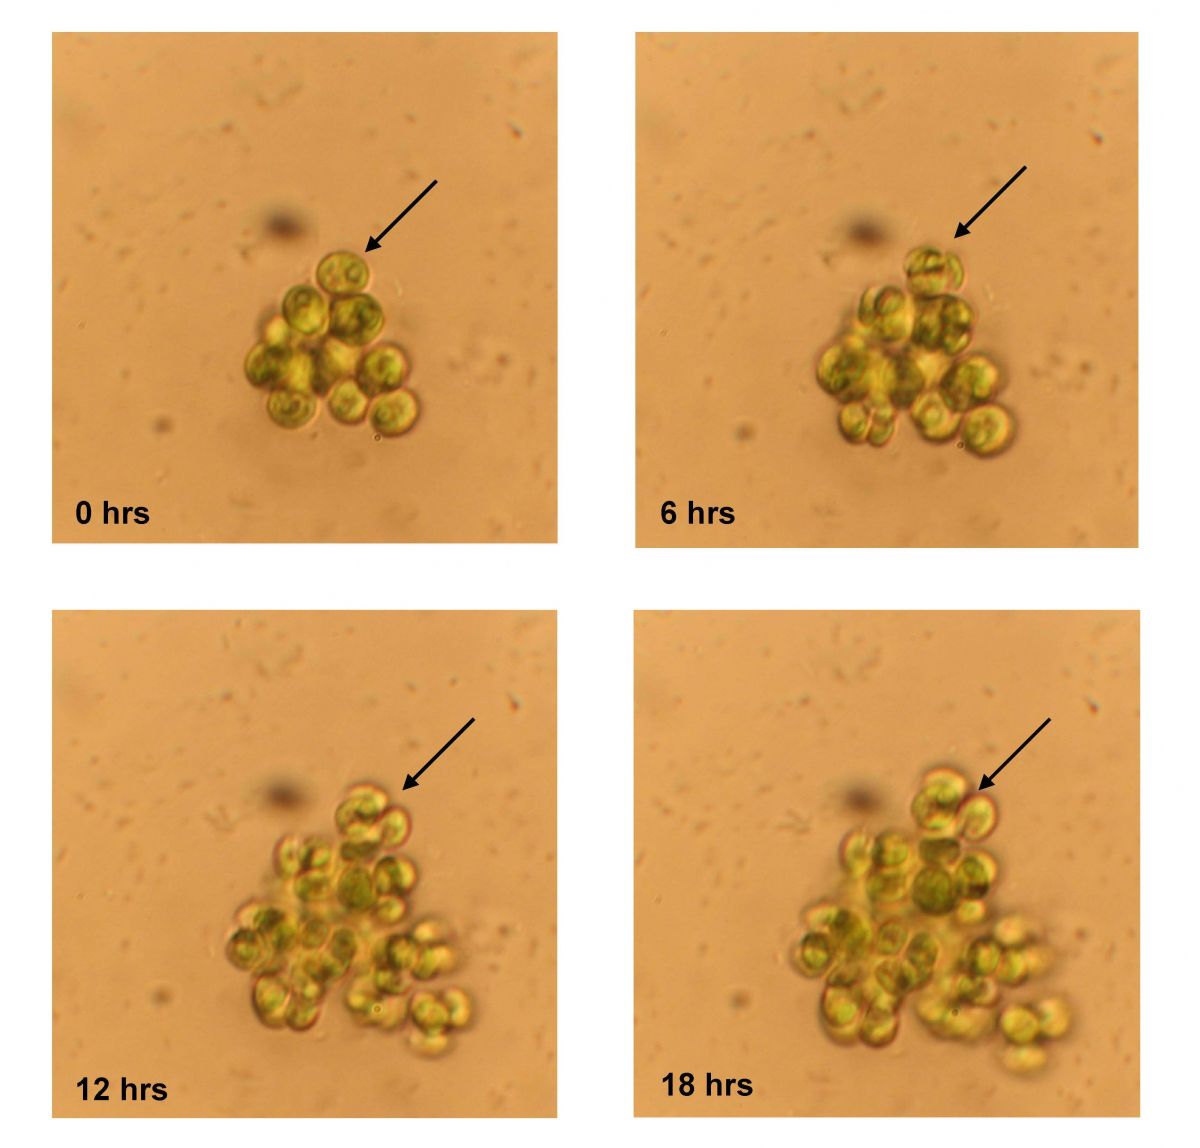 Kolonie mit identischen Tochterzellen, die sich nach der Teilung nicht mehr trennen. Die Kolonie wurde nach 500 Generationen Wachstum in Anwesenheit eines Fraßfeindes (Rädertier Brachinous calyciflorus) in dem Experiment beobachtet. Gezeigt wird die gleiche Kolonie nach 0, 6, 12 und 18 Stunden. Die Zelle, die mit dem Pfeil markiert ist, teilt sich in den ersten sechs Stunden in acht Tochterzellen, die nach den Zellteilungen zusammenbleiben, statt sich, wie in ihrem Vorfahren in dem Experiment, zu trennen und wegzuschwimmen.
